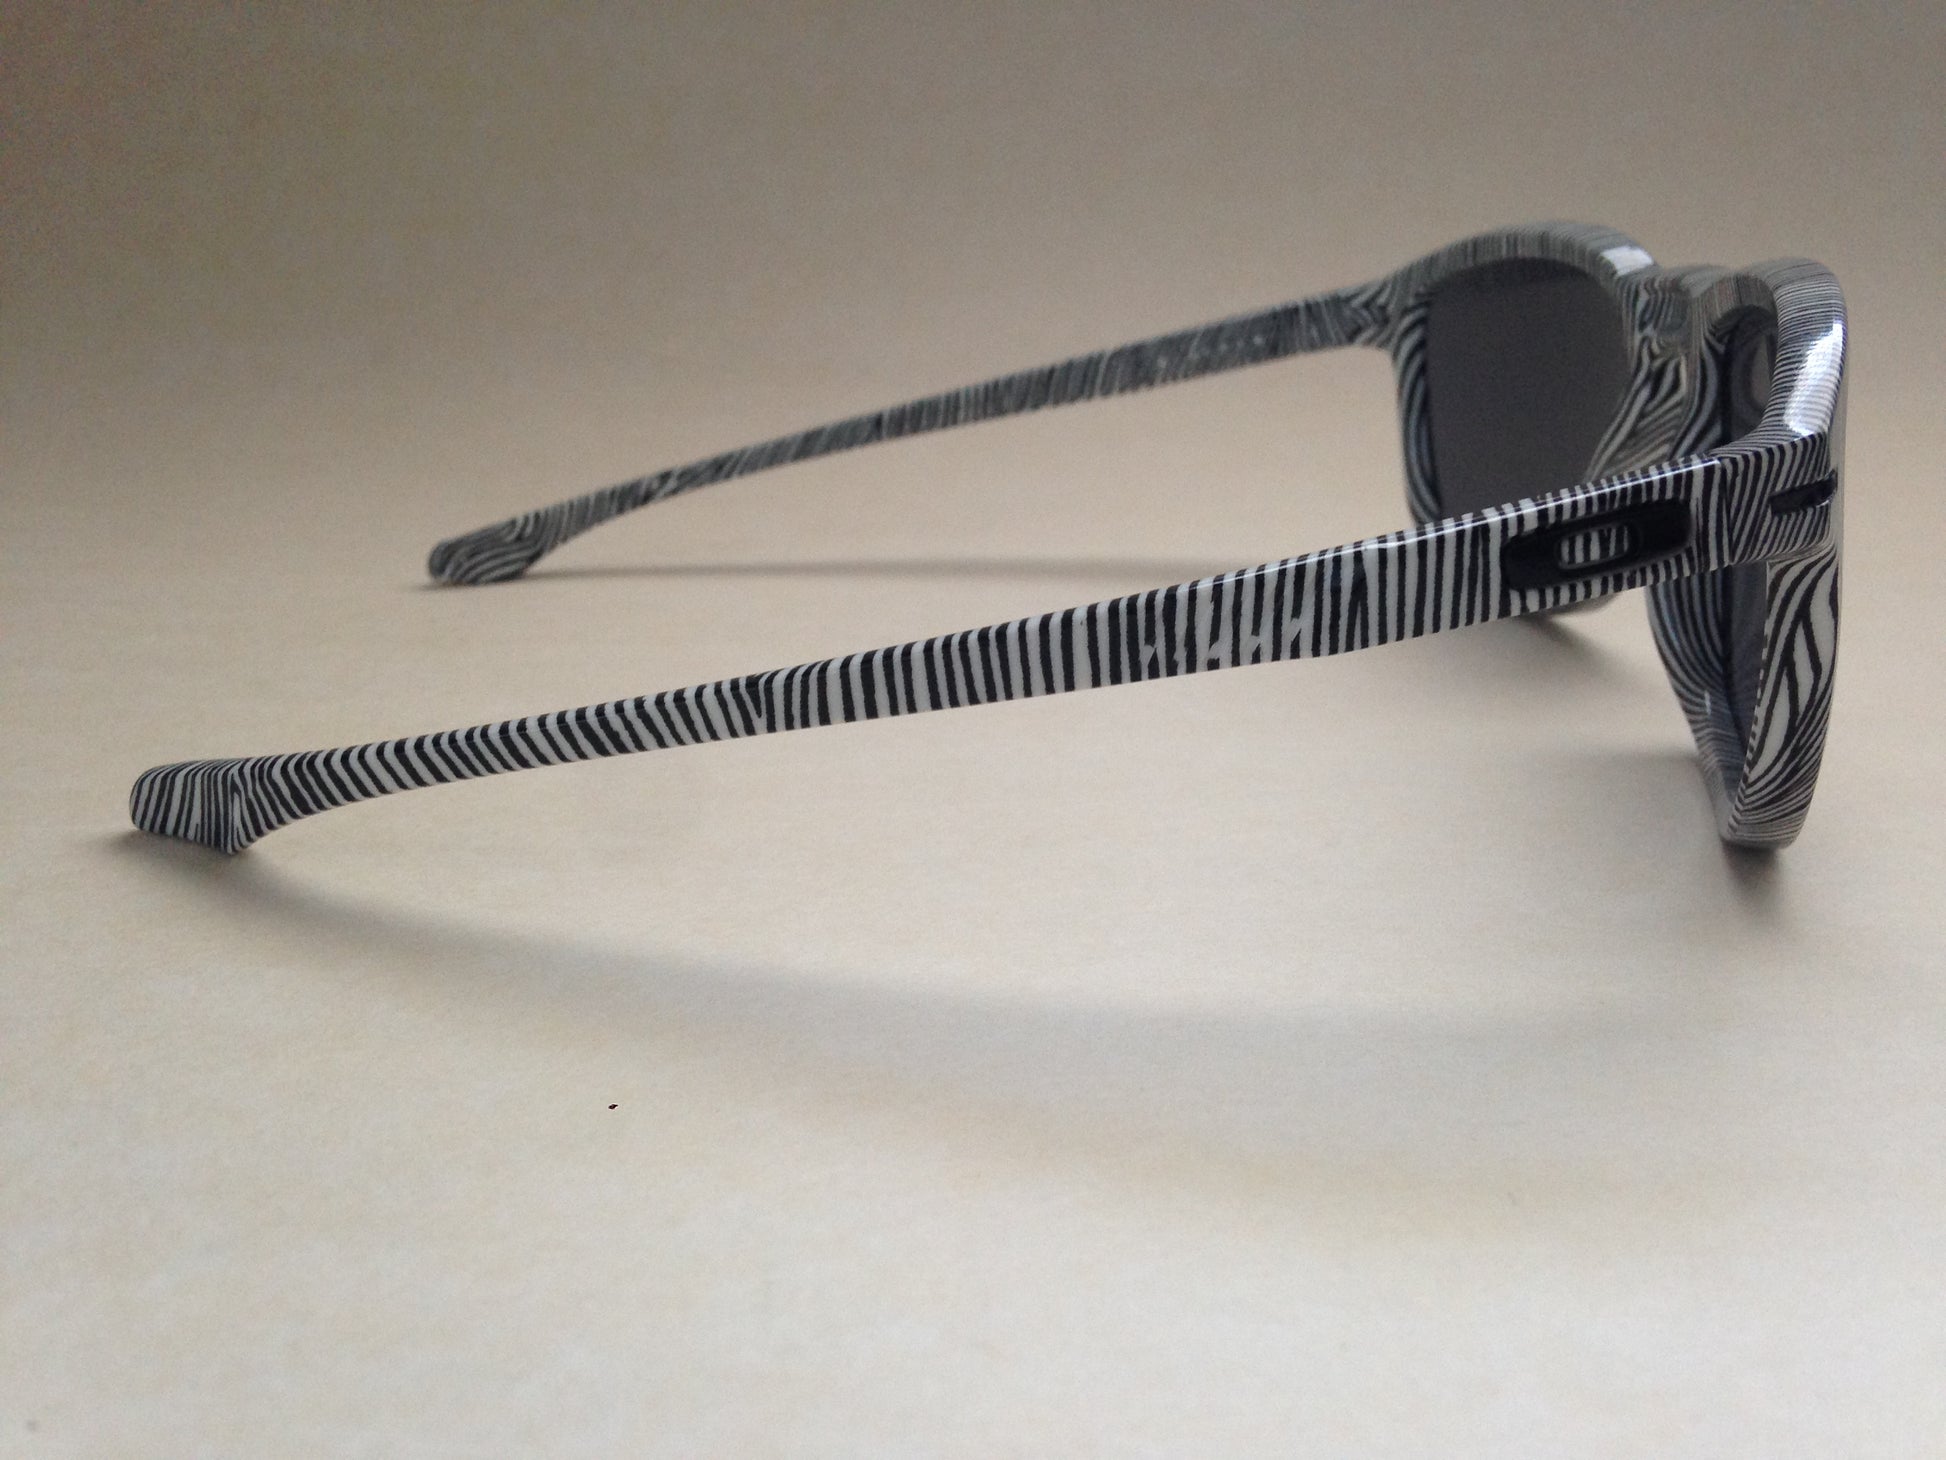 Oakley Enduro Sunglasses Fingerprint White Zebra Swirl Frame Gray Lens Oo9223 21 - Sunglasses